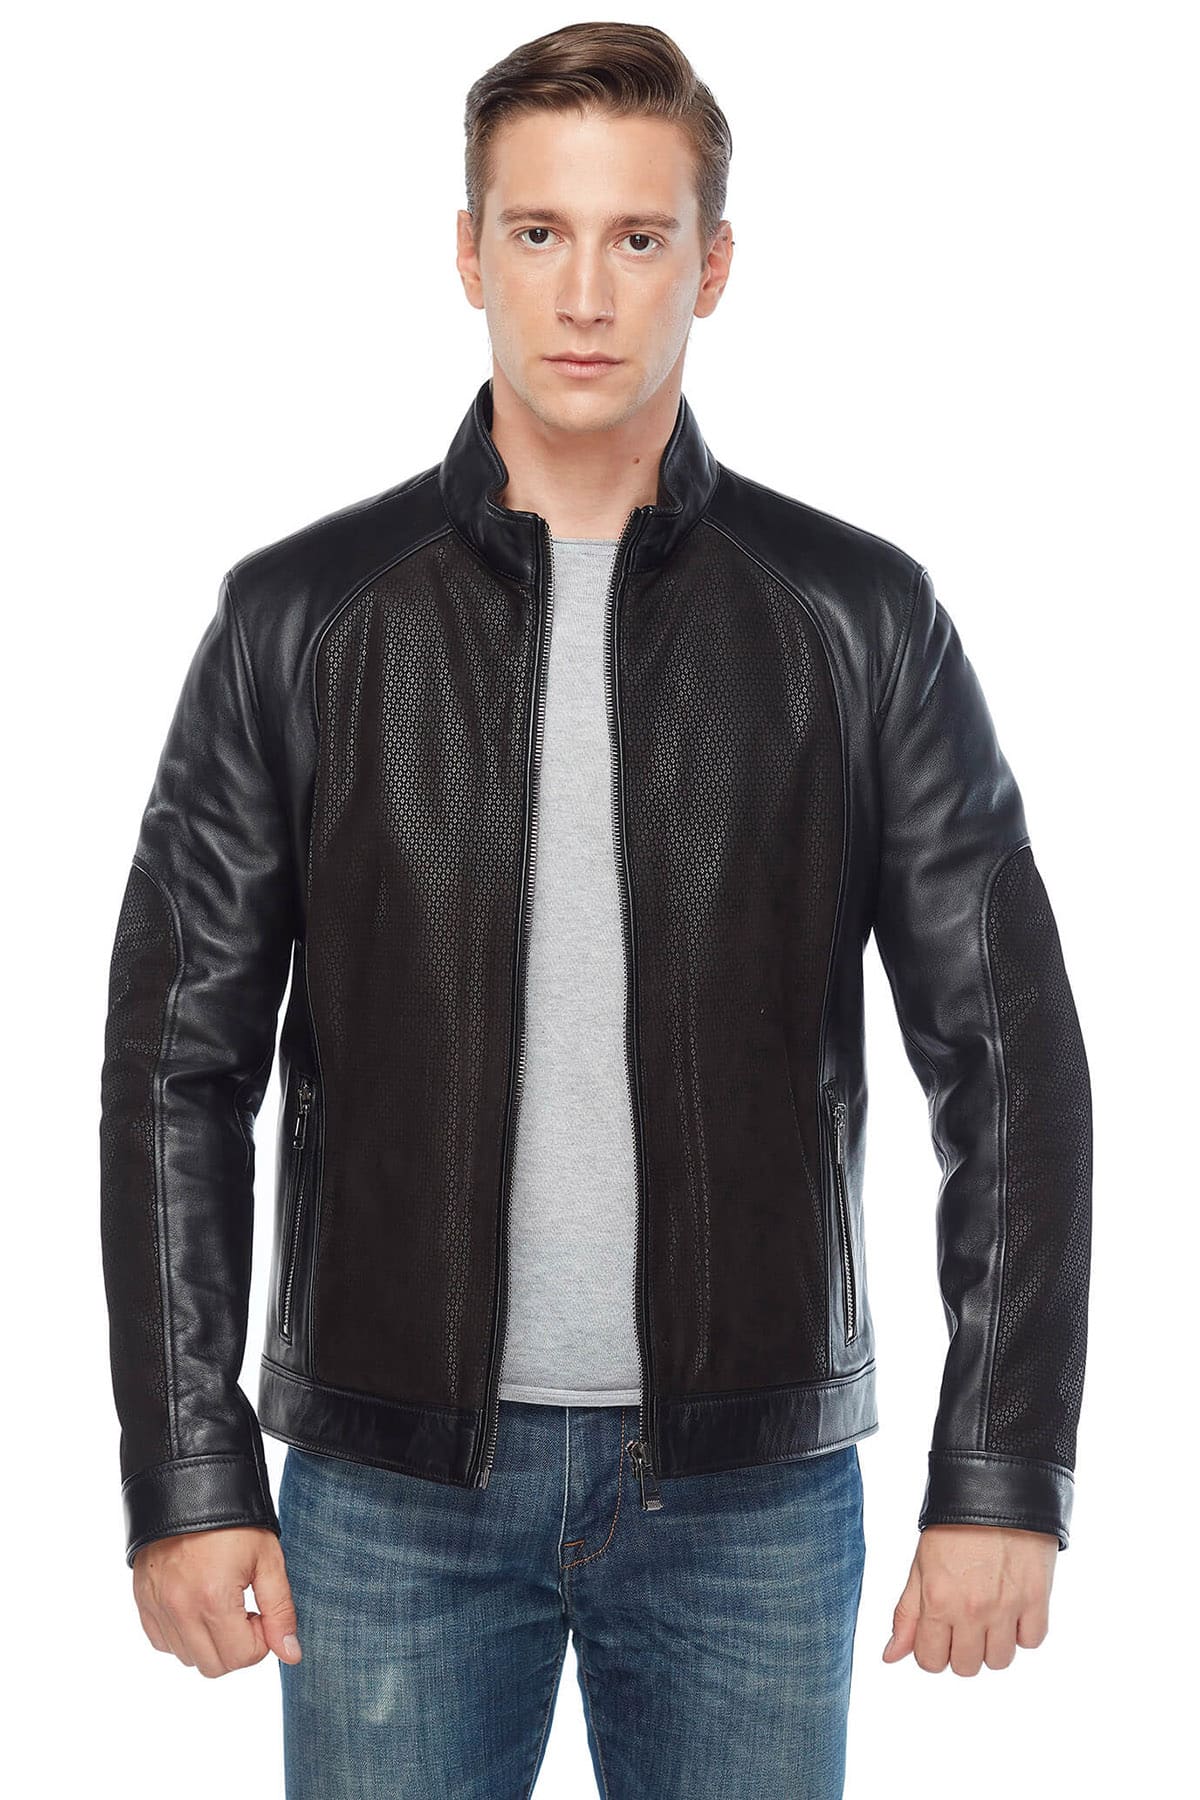 Men's 100 % Real Black Leather Laser Pyramid Design Jacket